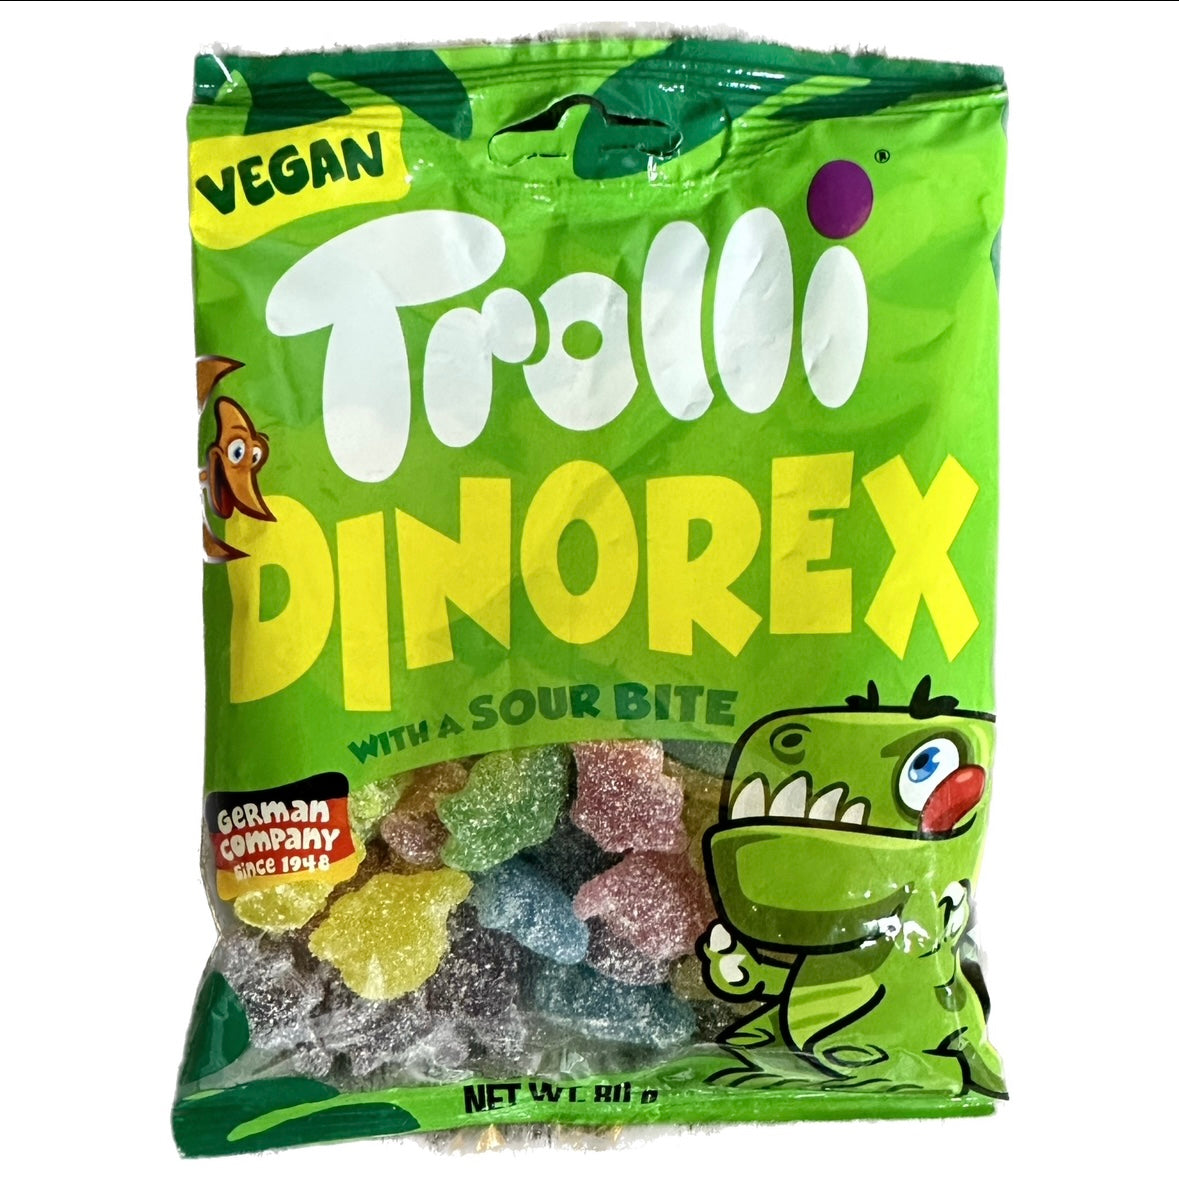 Trolli Dinorex Sour Bite